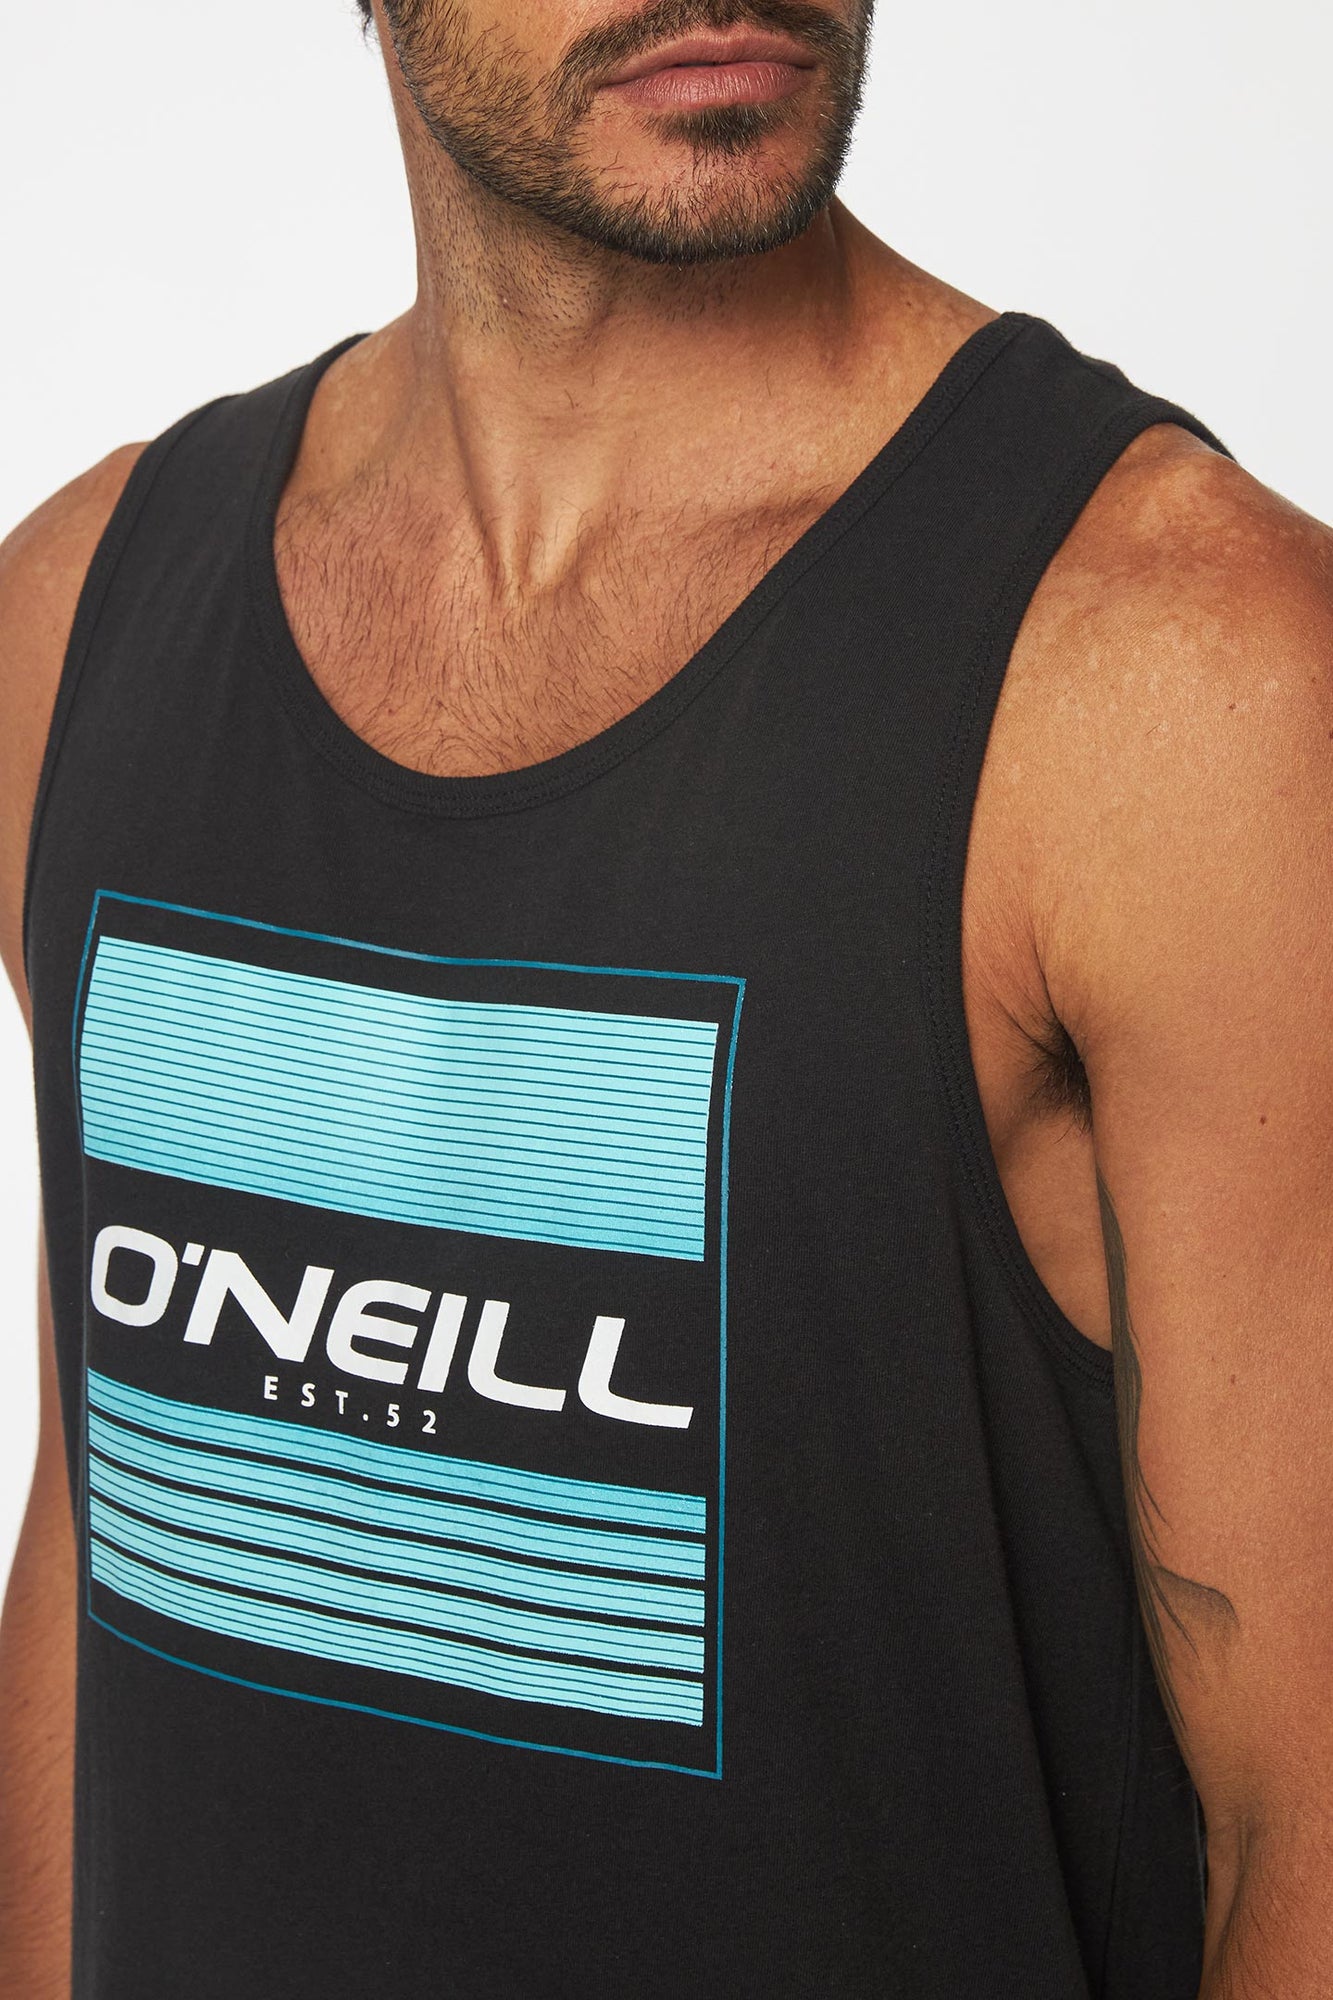 O'Neill Men's Spinner Tank Top, Breathable, Sleeveless